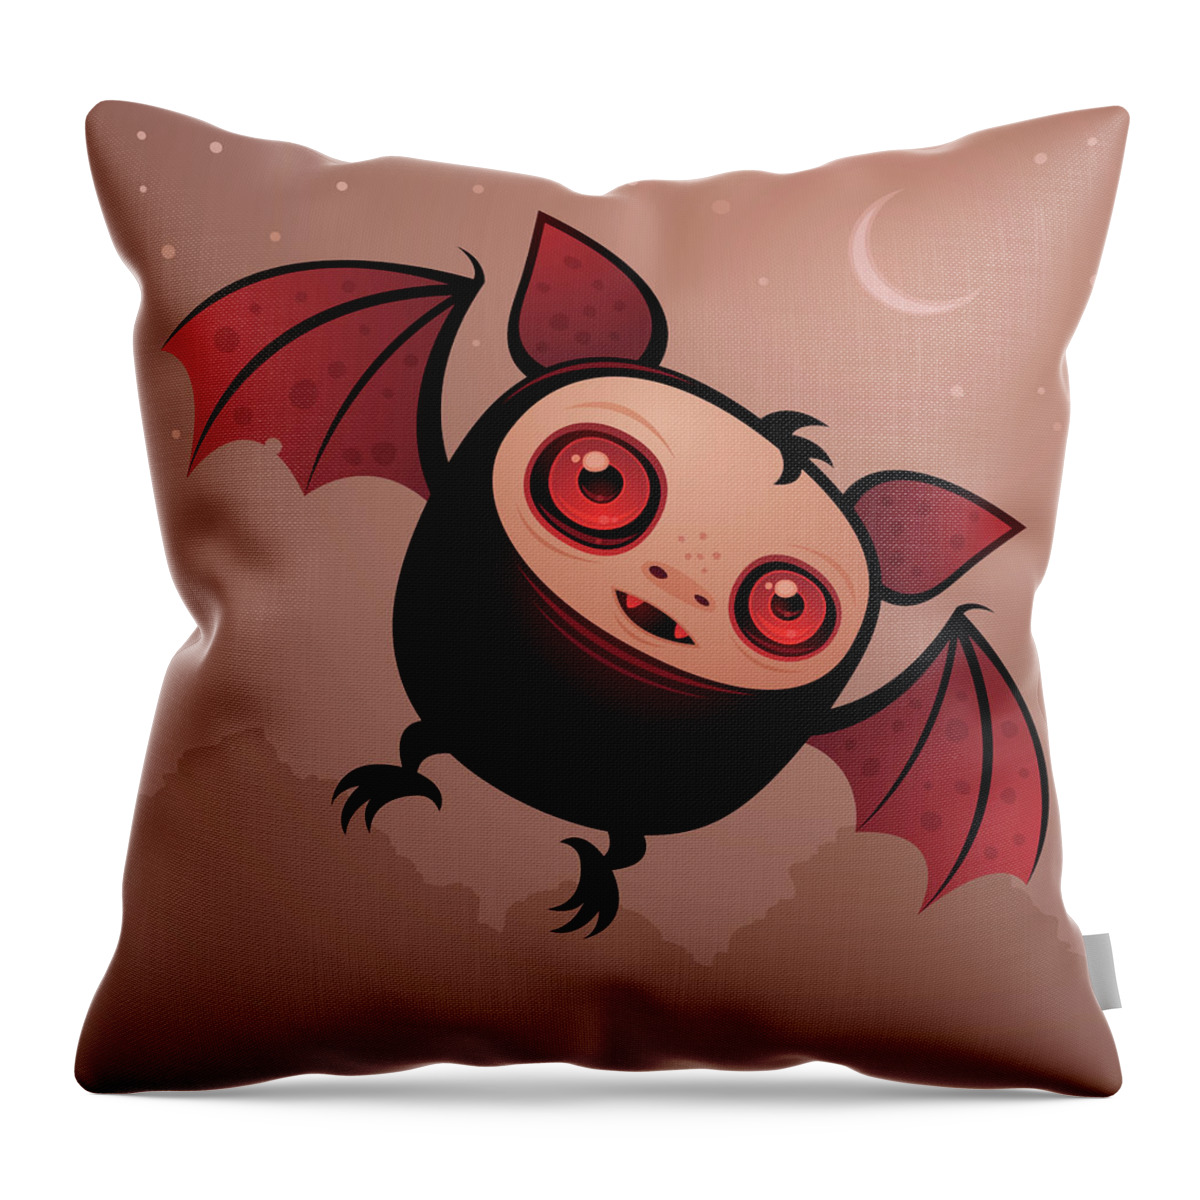 Cute Throw Pillow featuring the digital art Red Eye the Vampire Bat Boy by John Schwegel